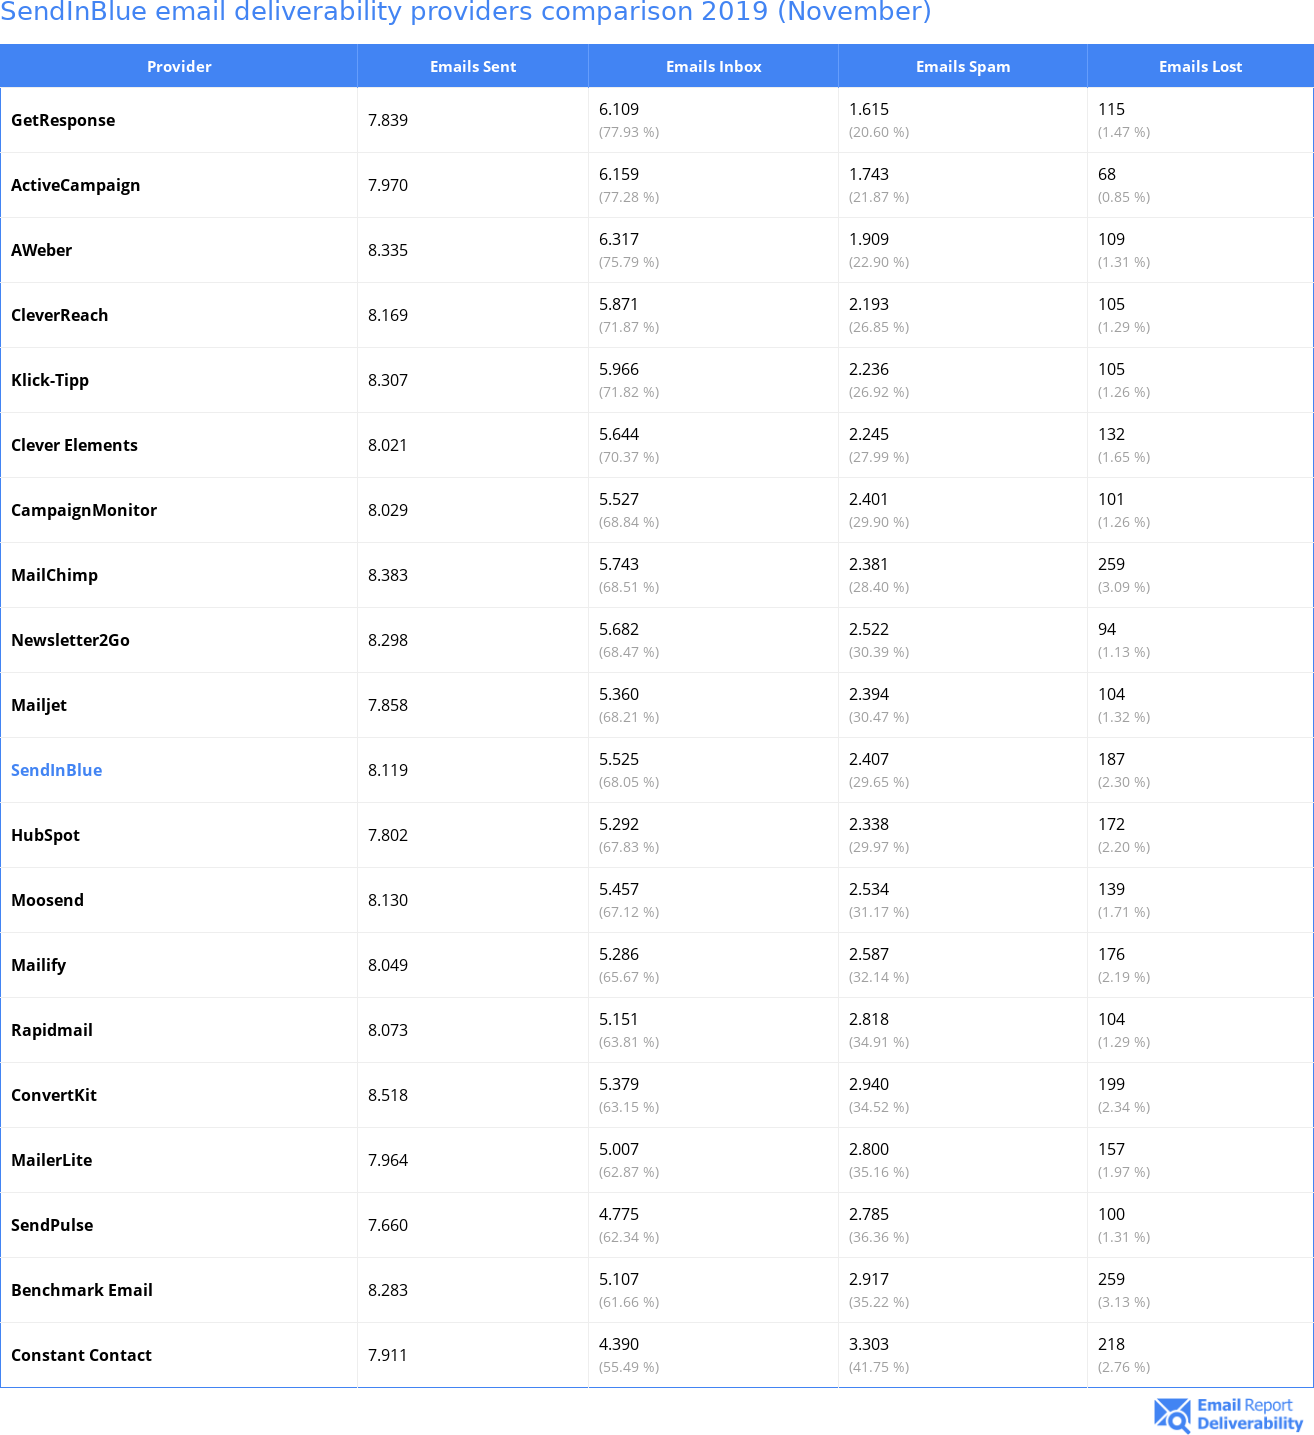 SendInBlue email deliverability providers comparison 2019 (November)